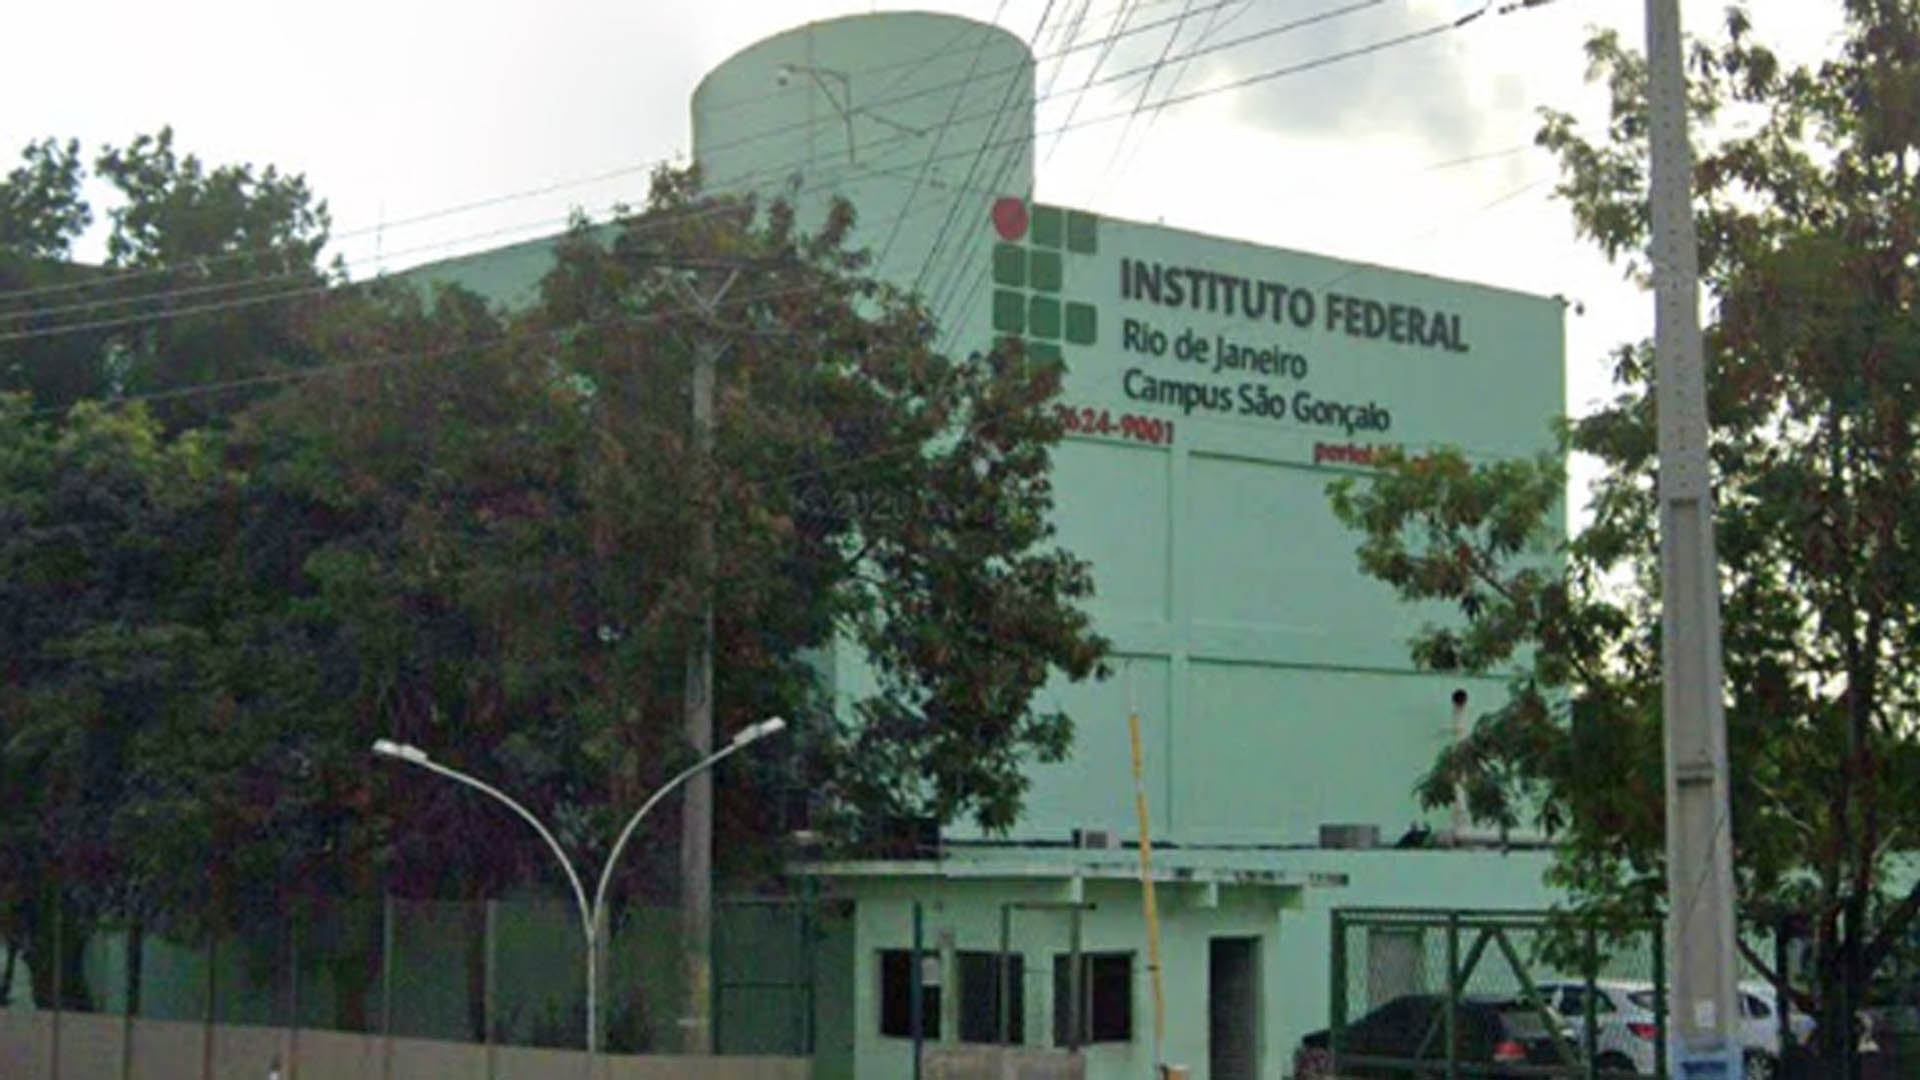 Instituto Federal do Rio de Janeiro - IFRJ - O IFRJ divulga o